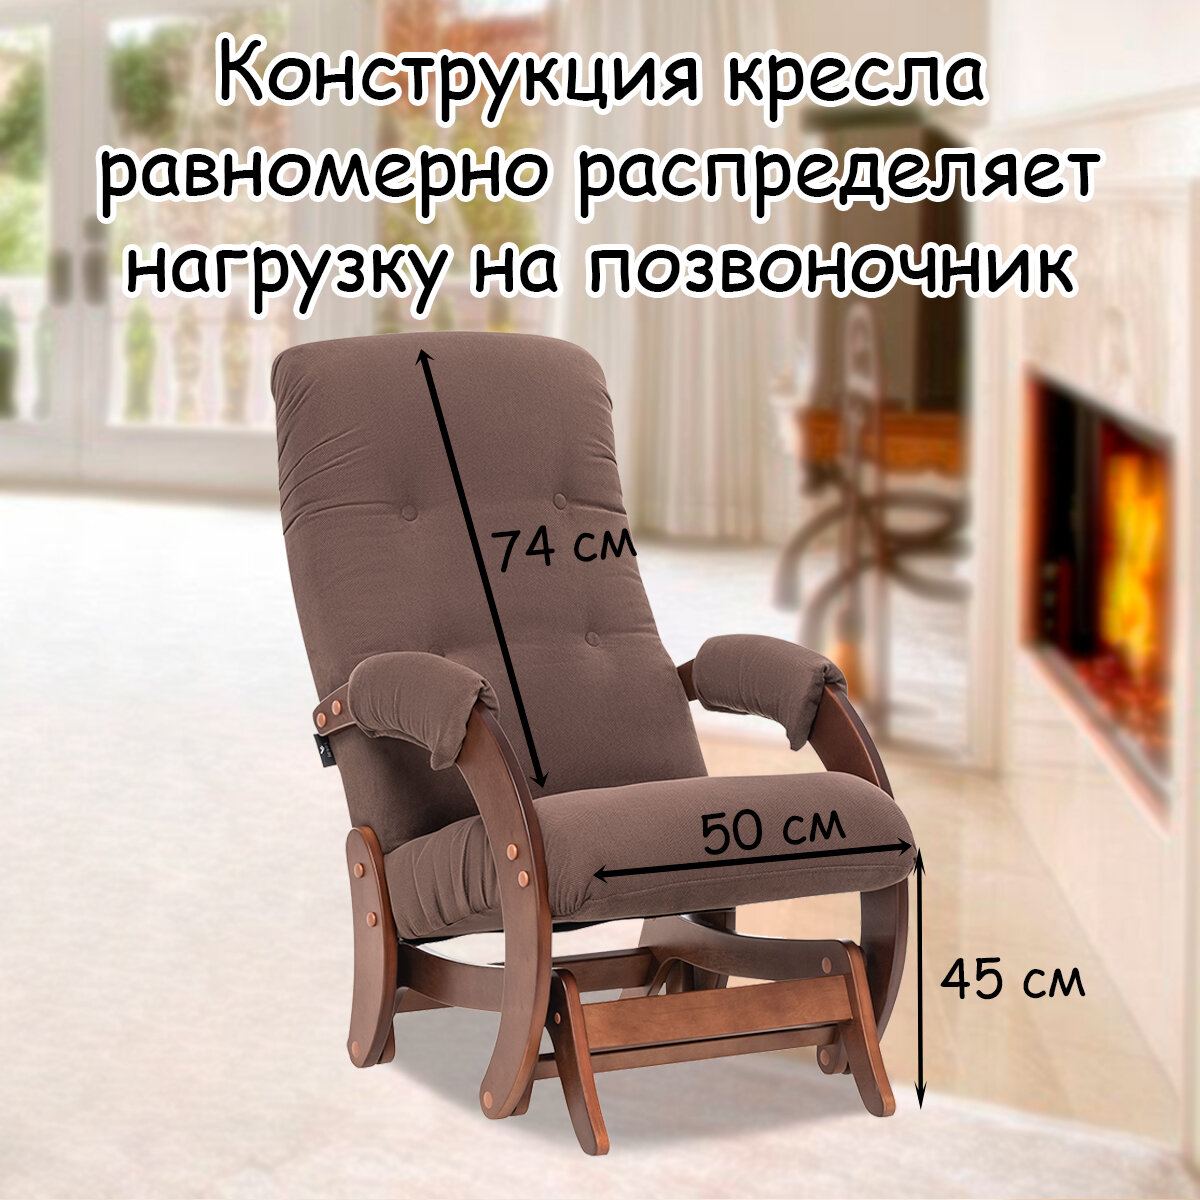 Кресло-качалка (глайдер) с маятниковым механизмом для взрослых 55х88х100 см, модель 68, verona, цвет: Brown (коричневый), каркас: Oreh (коричневый) - фотография № 2